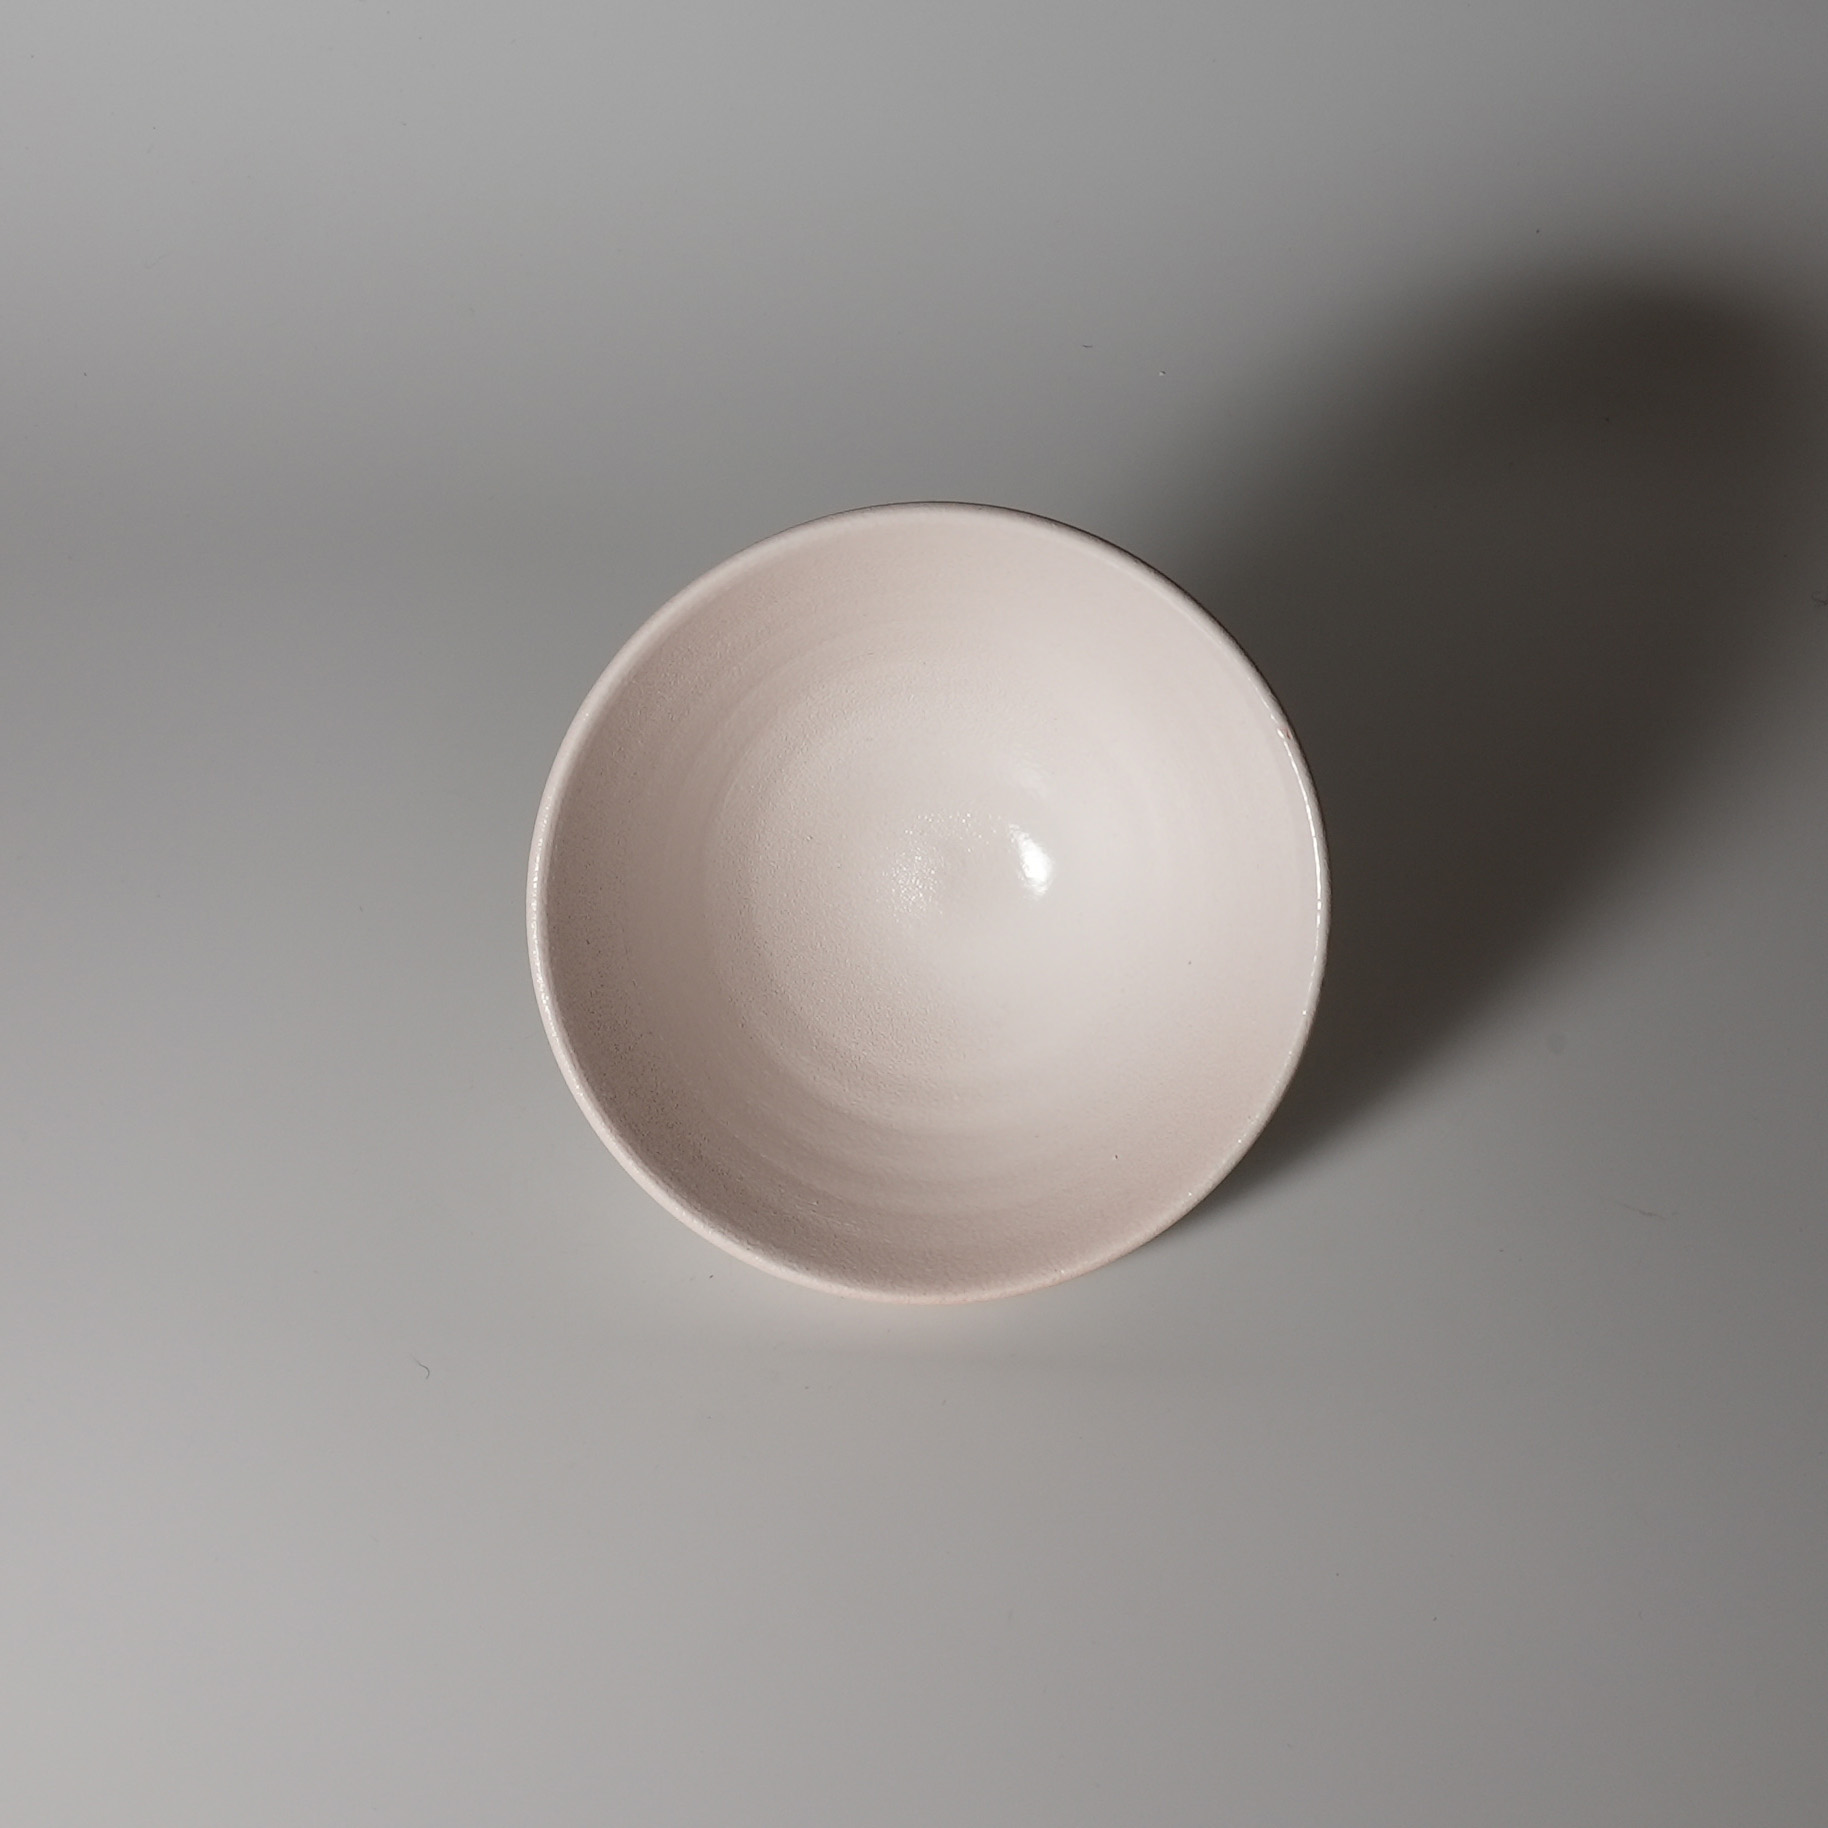 hagi-saze-bowl-0183